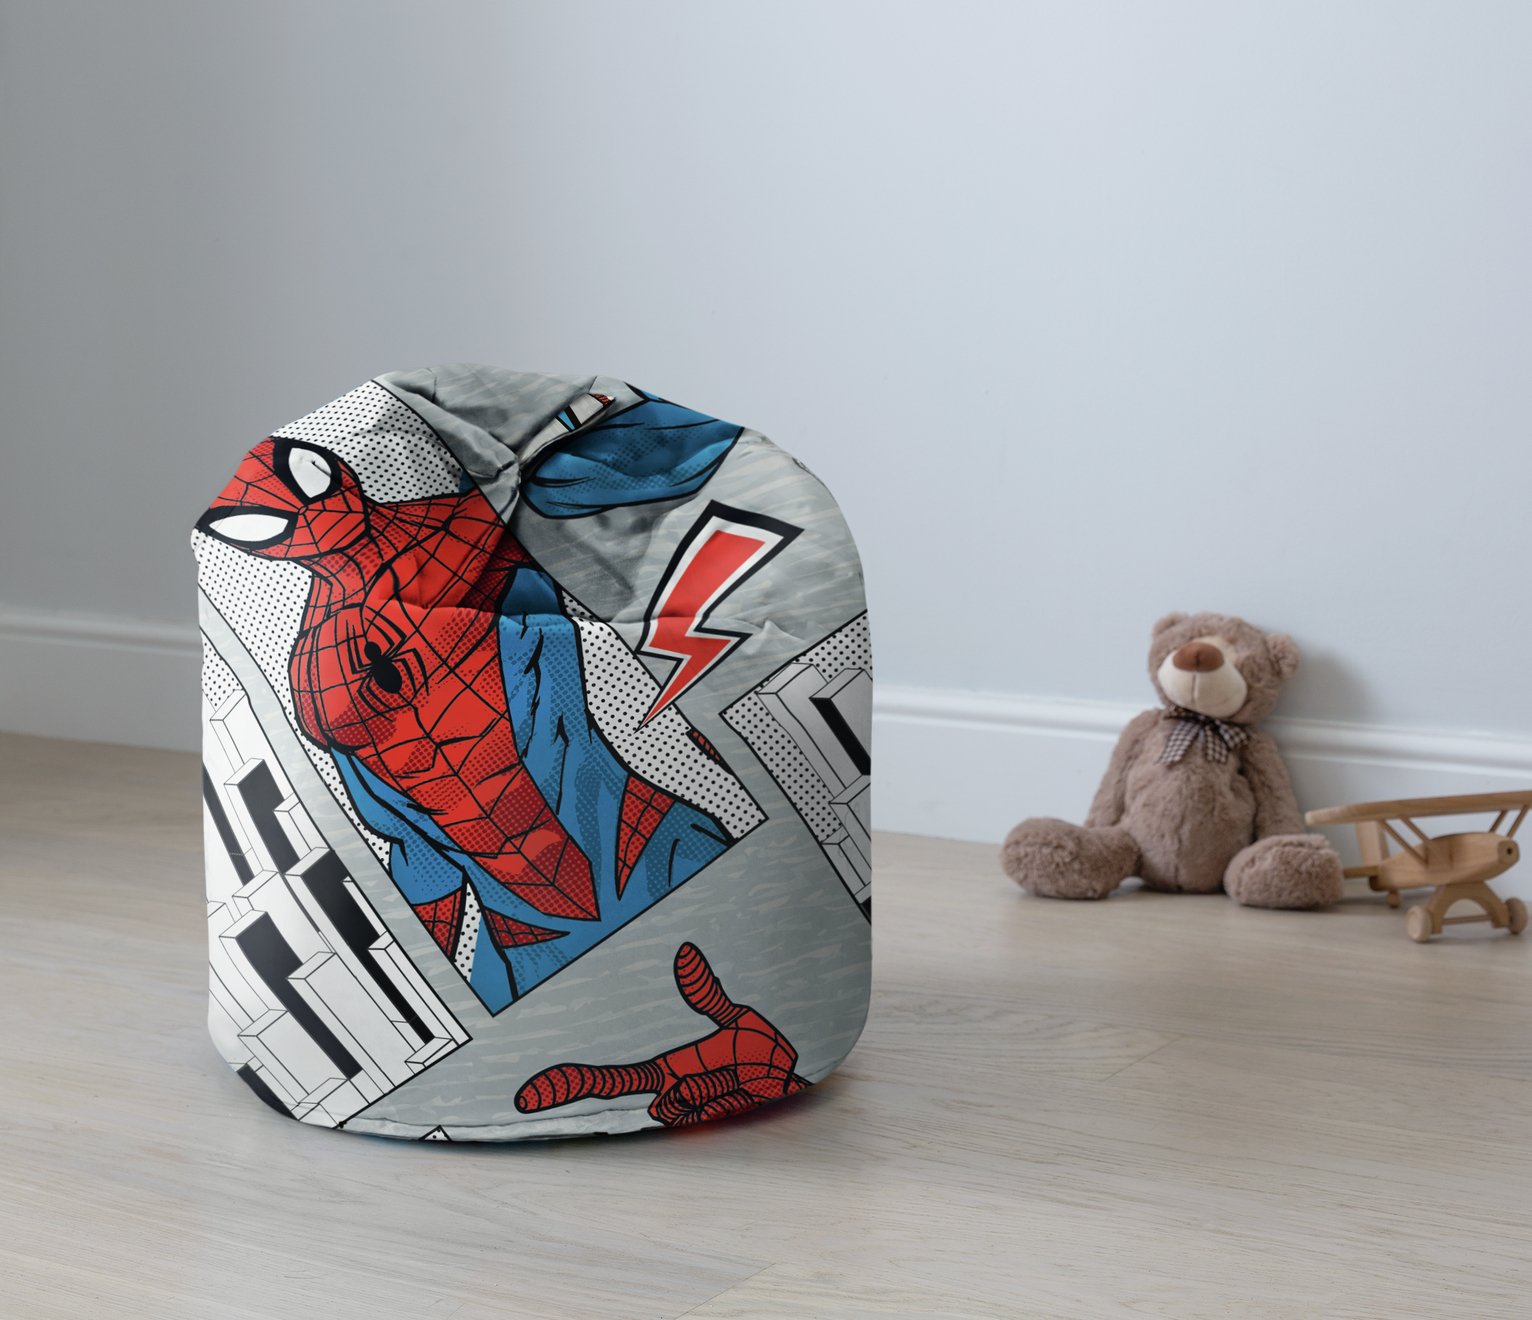 Disney Ultimate Spiderman Beanbag Review